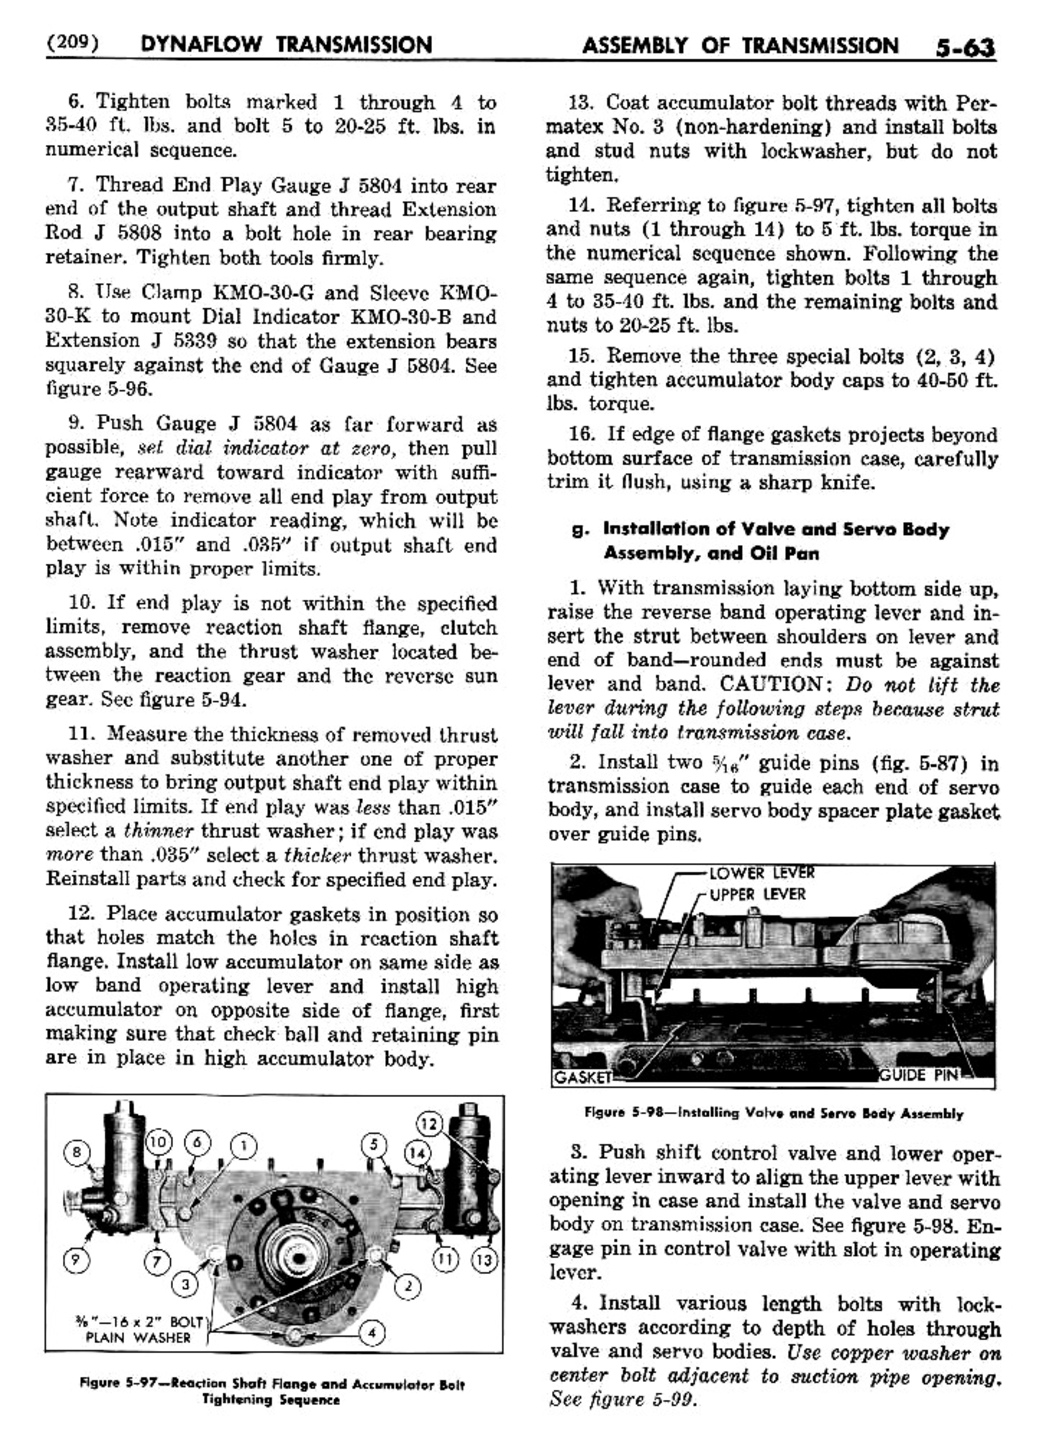 n_06 1956 Buick Shop Manual - Dynaflow-063-063.jpg